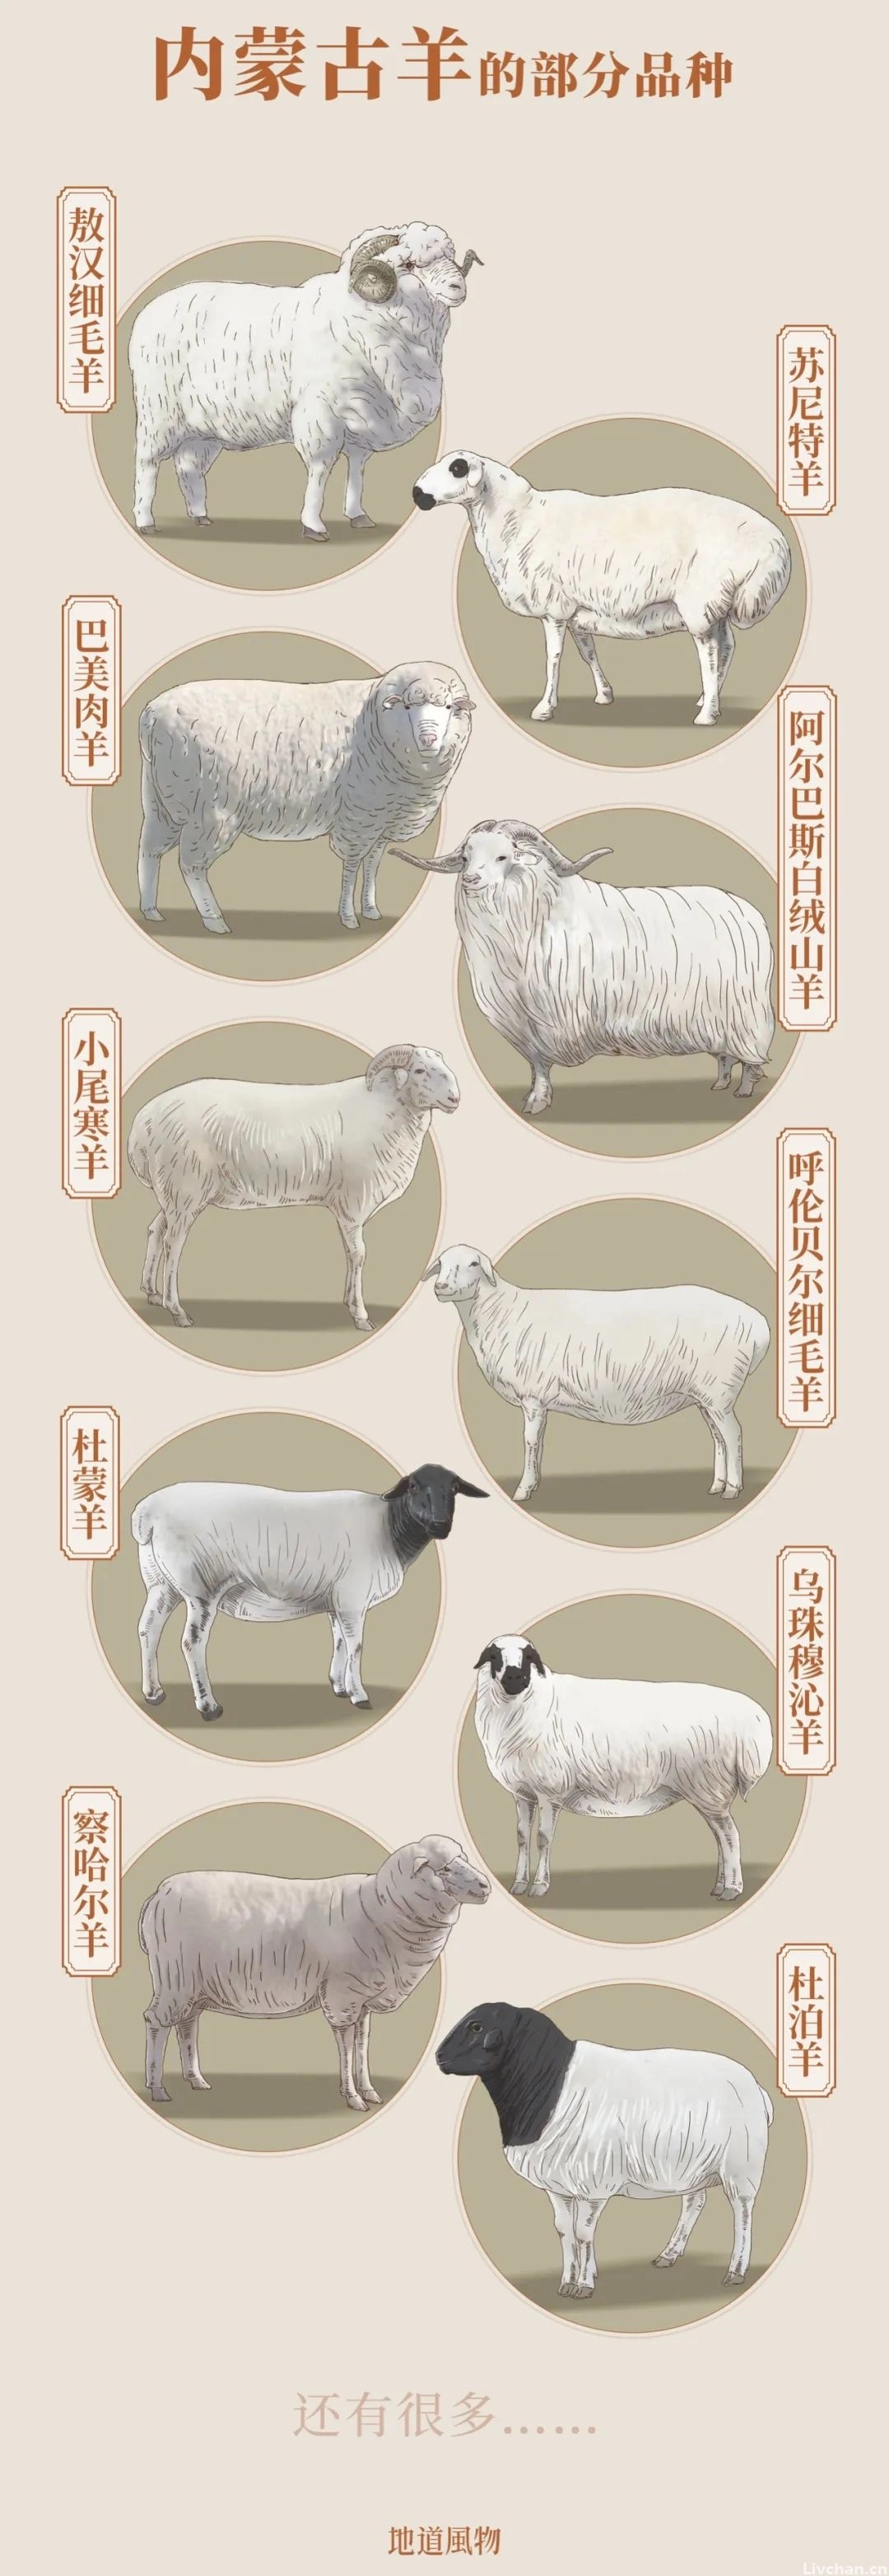 内蒙古，中国最好的羊肉在这里